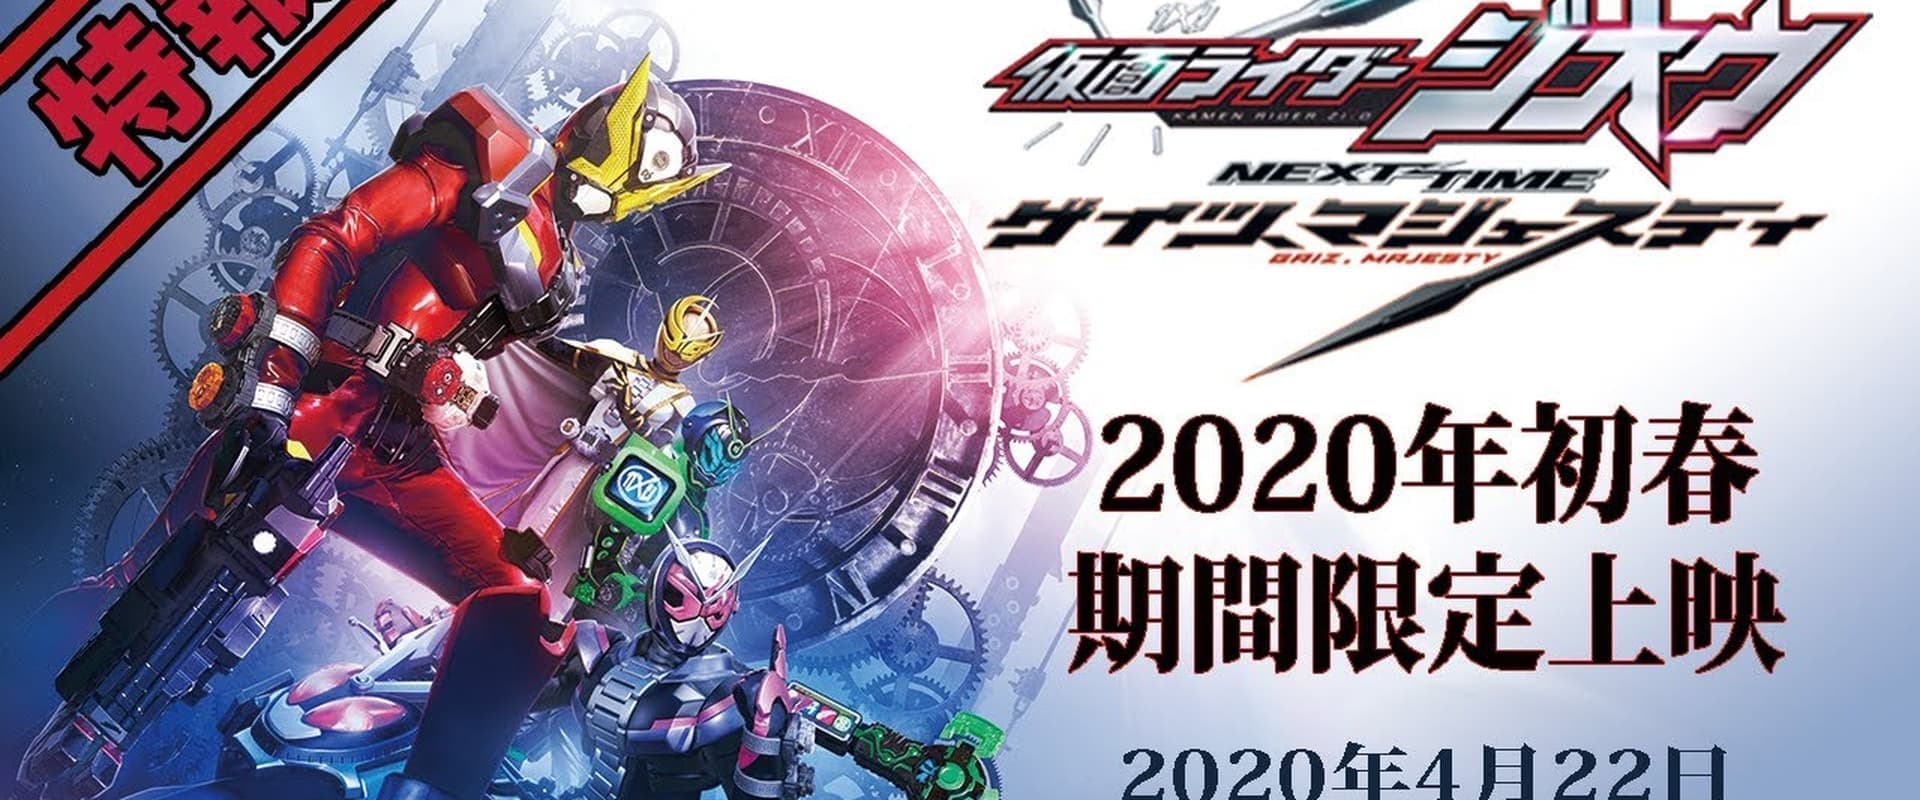 Kamen Rider Zi-O NEXT TIME: Geiz, Majesty